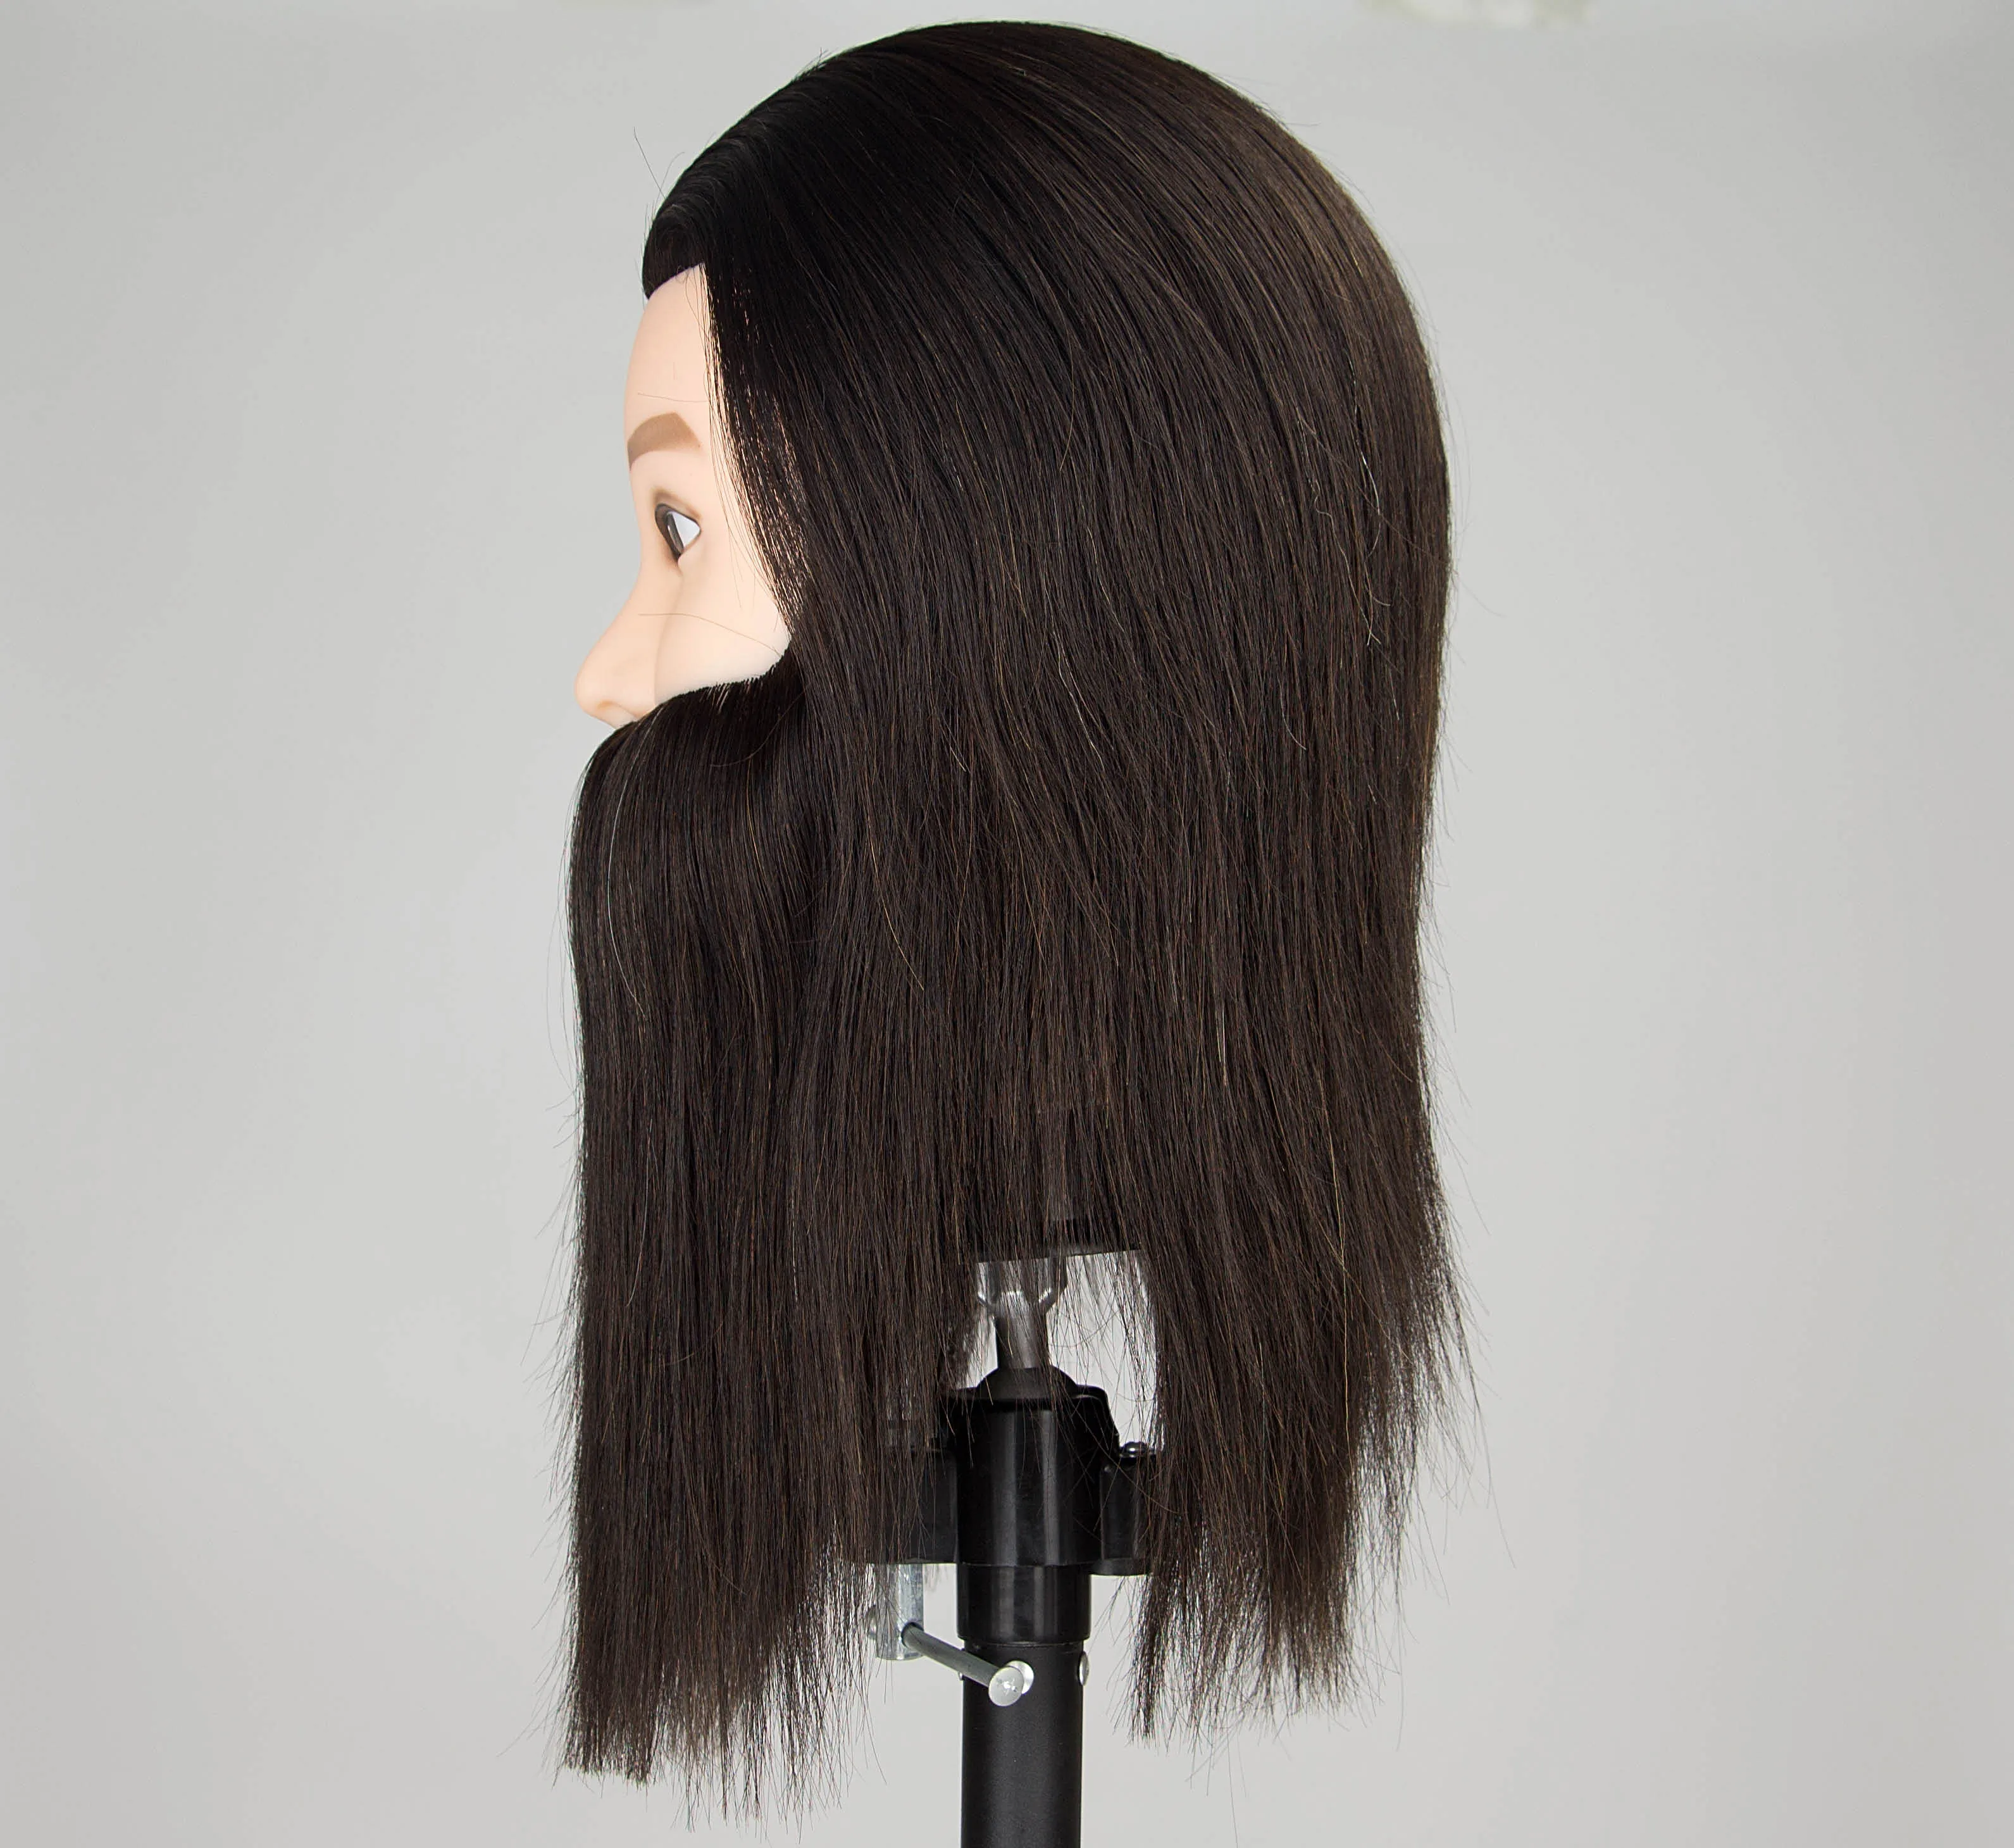 Male Mannequin Head 100% Human Hair Haircut Training Manikin Doll